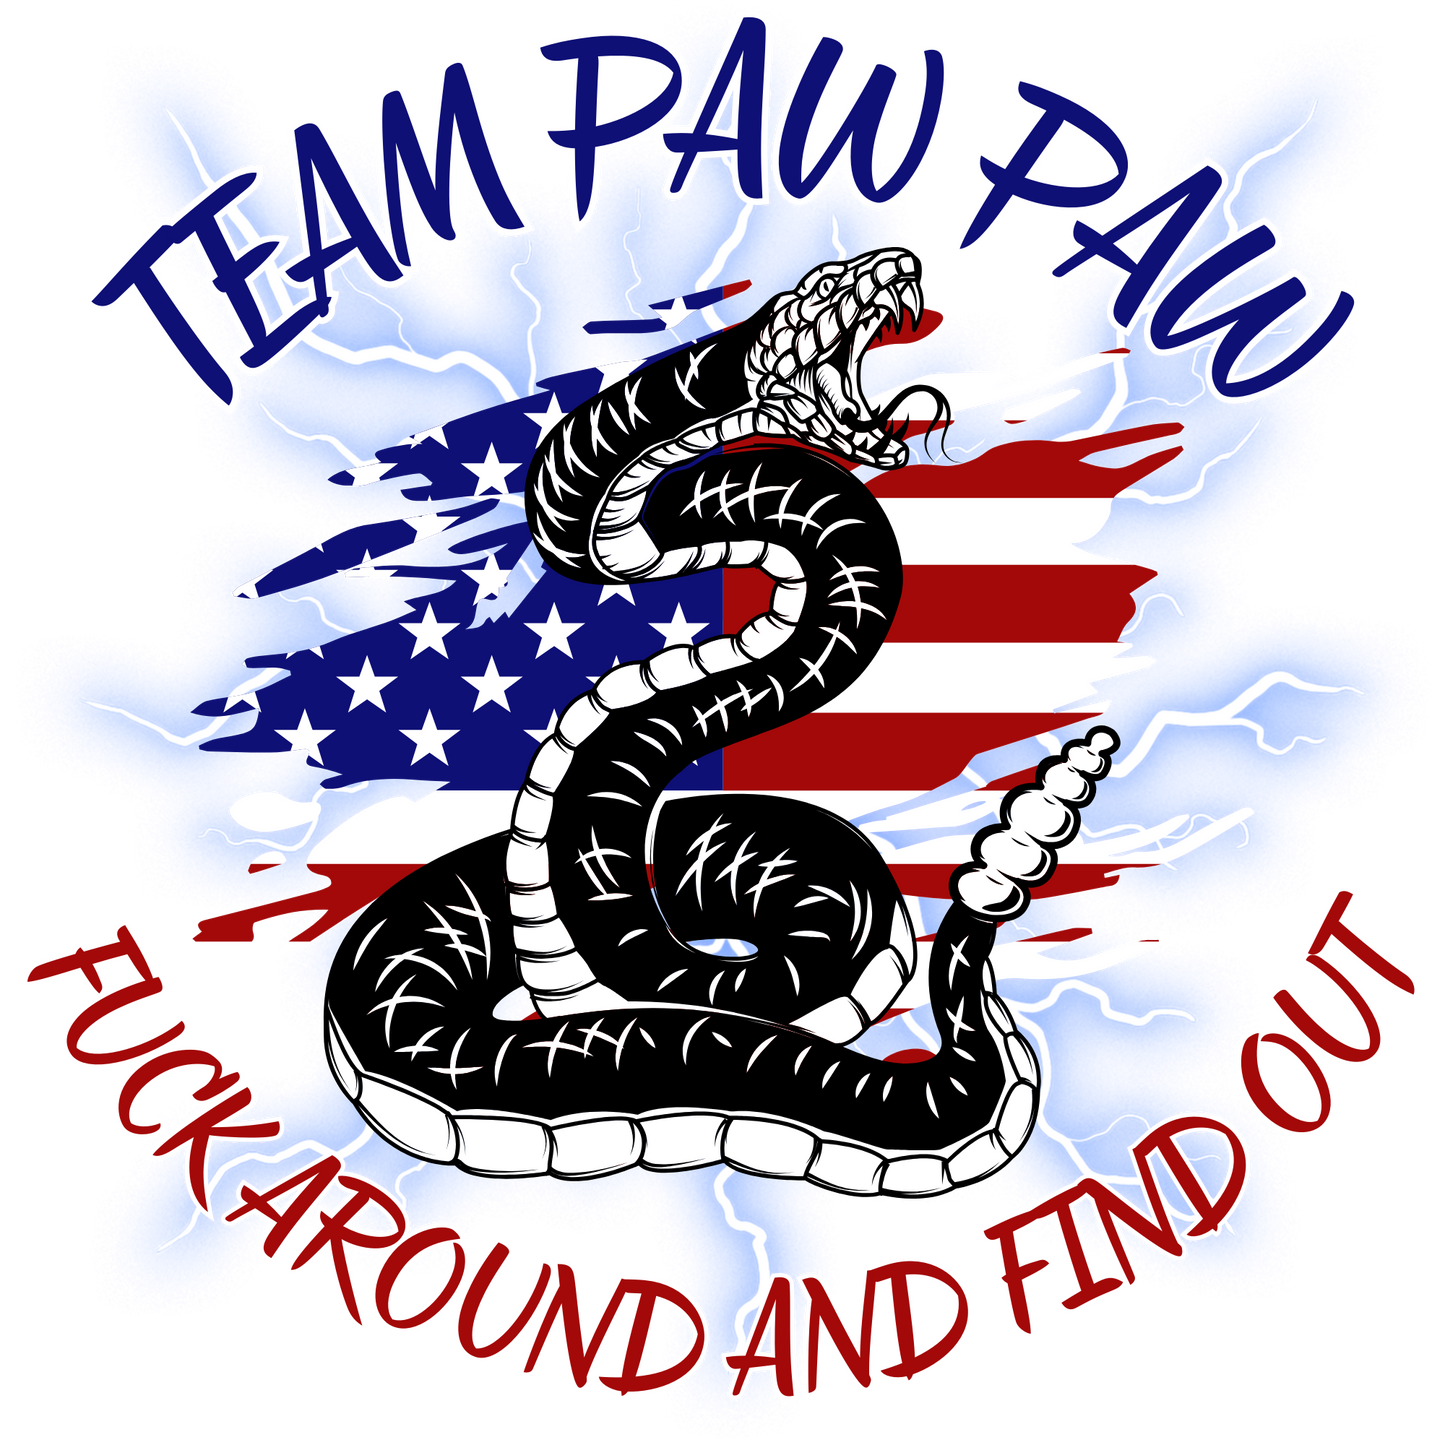 Team Paw Paw Shirt - Design 2